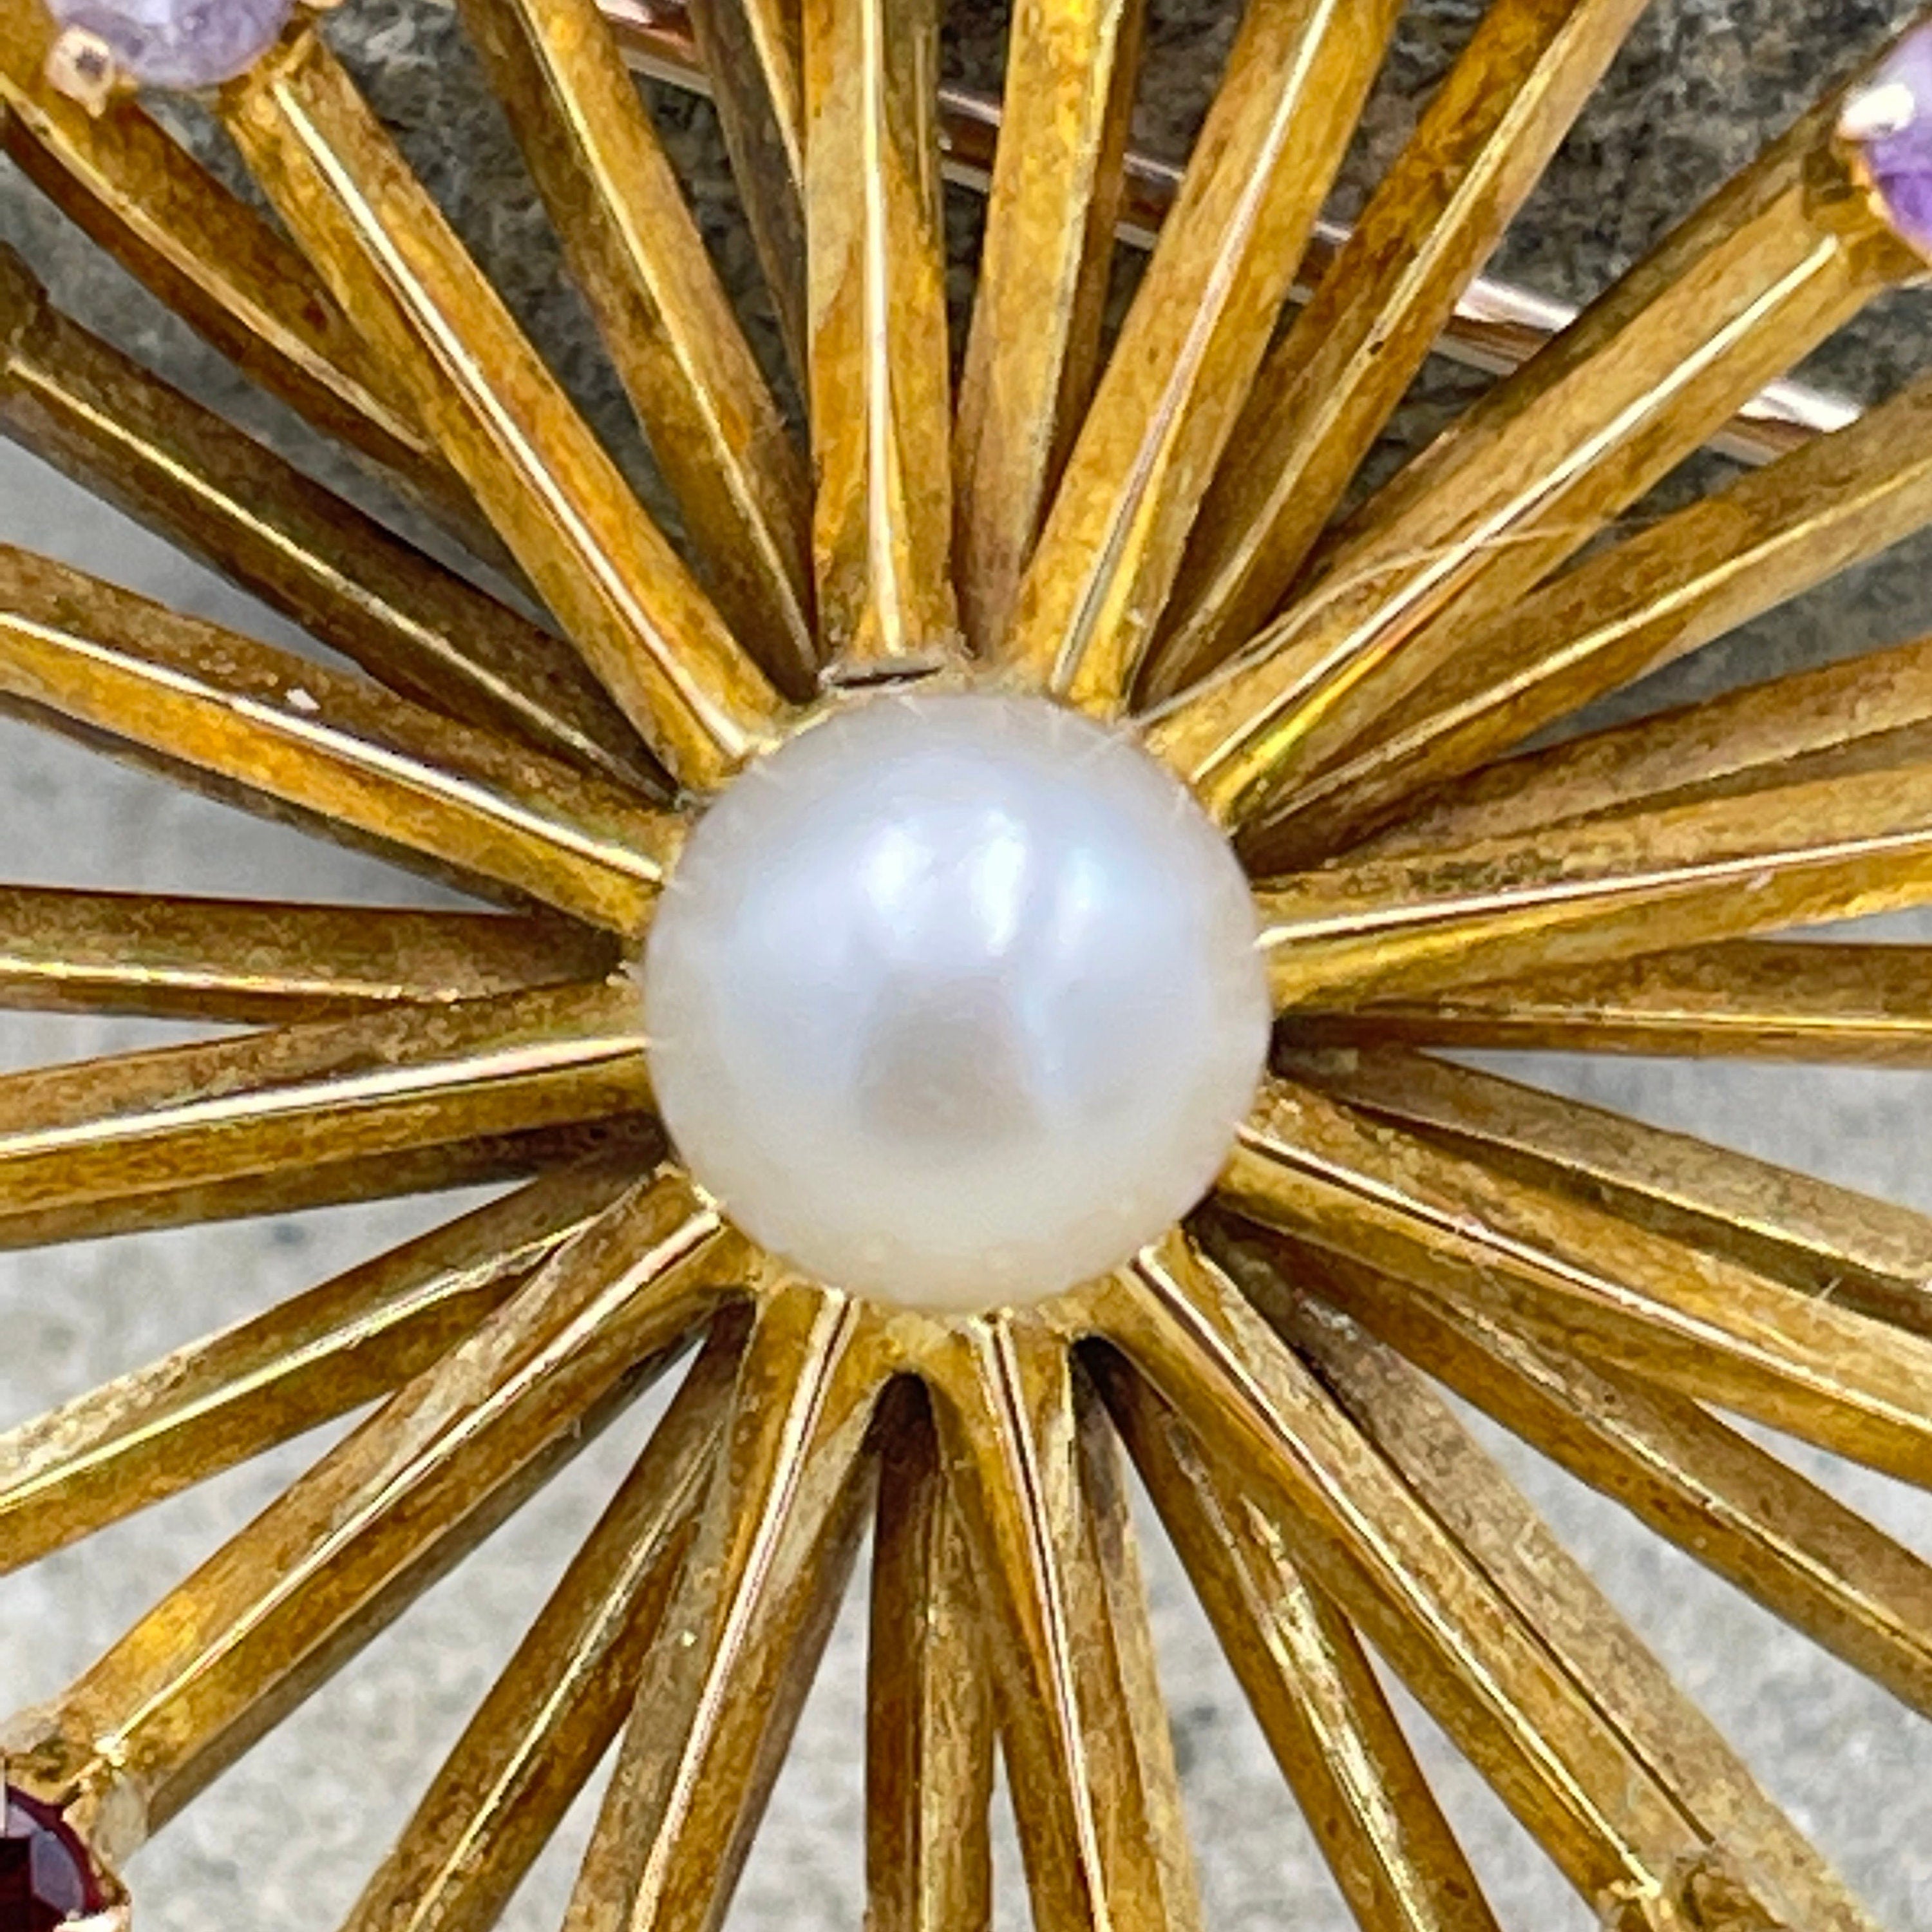 Vintage 1960s, 9ct Gold, multi gem & cultured Pearl starburst brooch